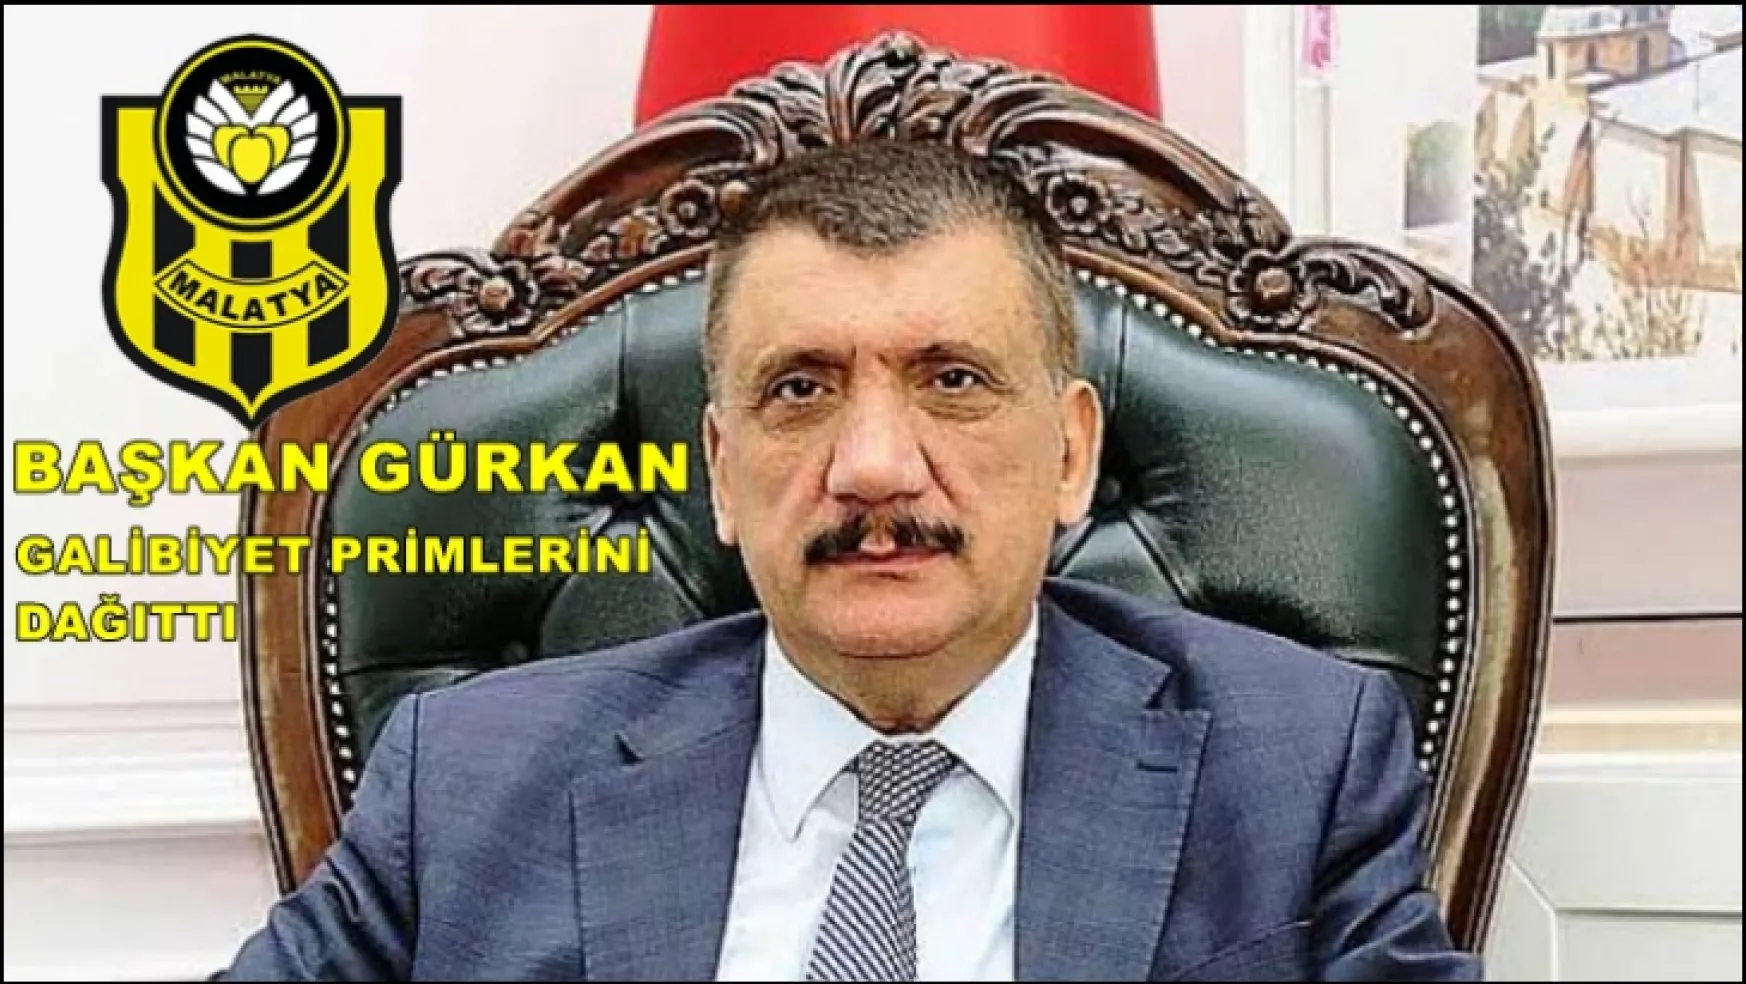 Başkan Gürkan 650 Bin TL prim dağıttı